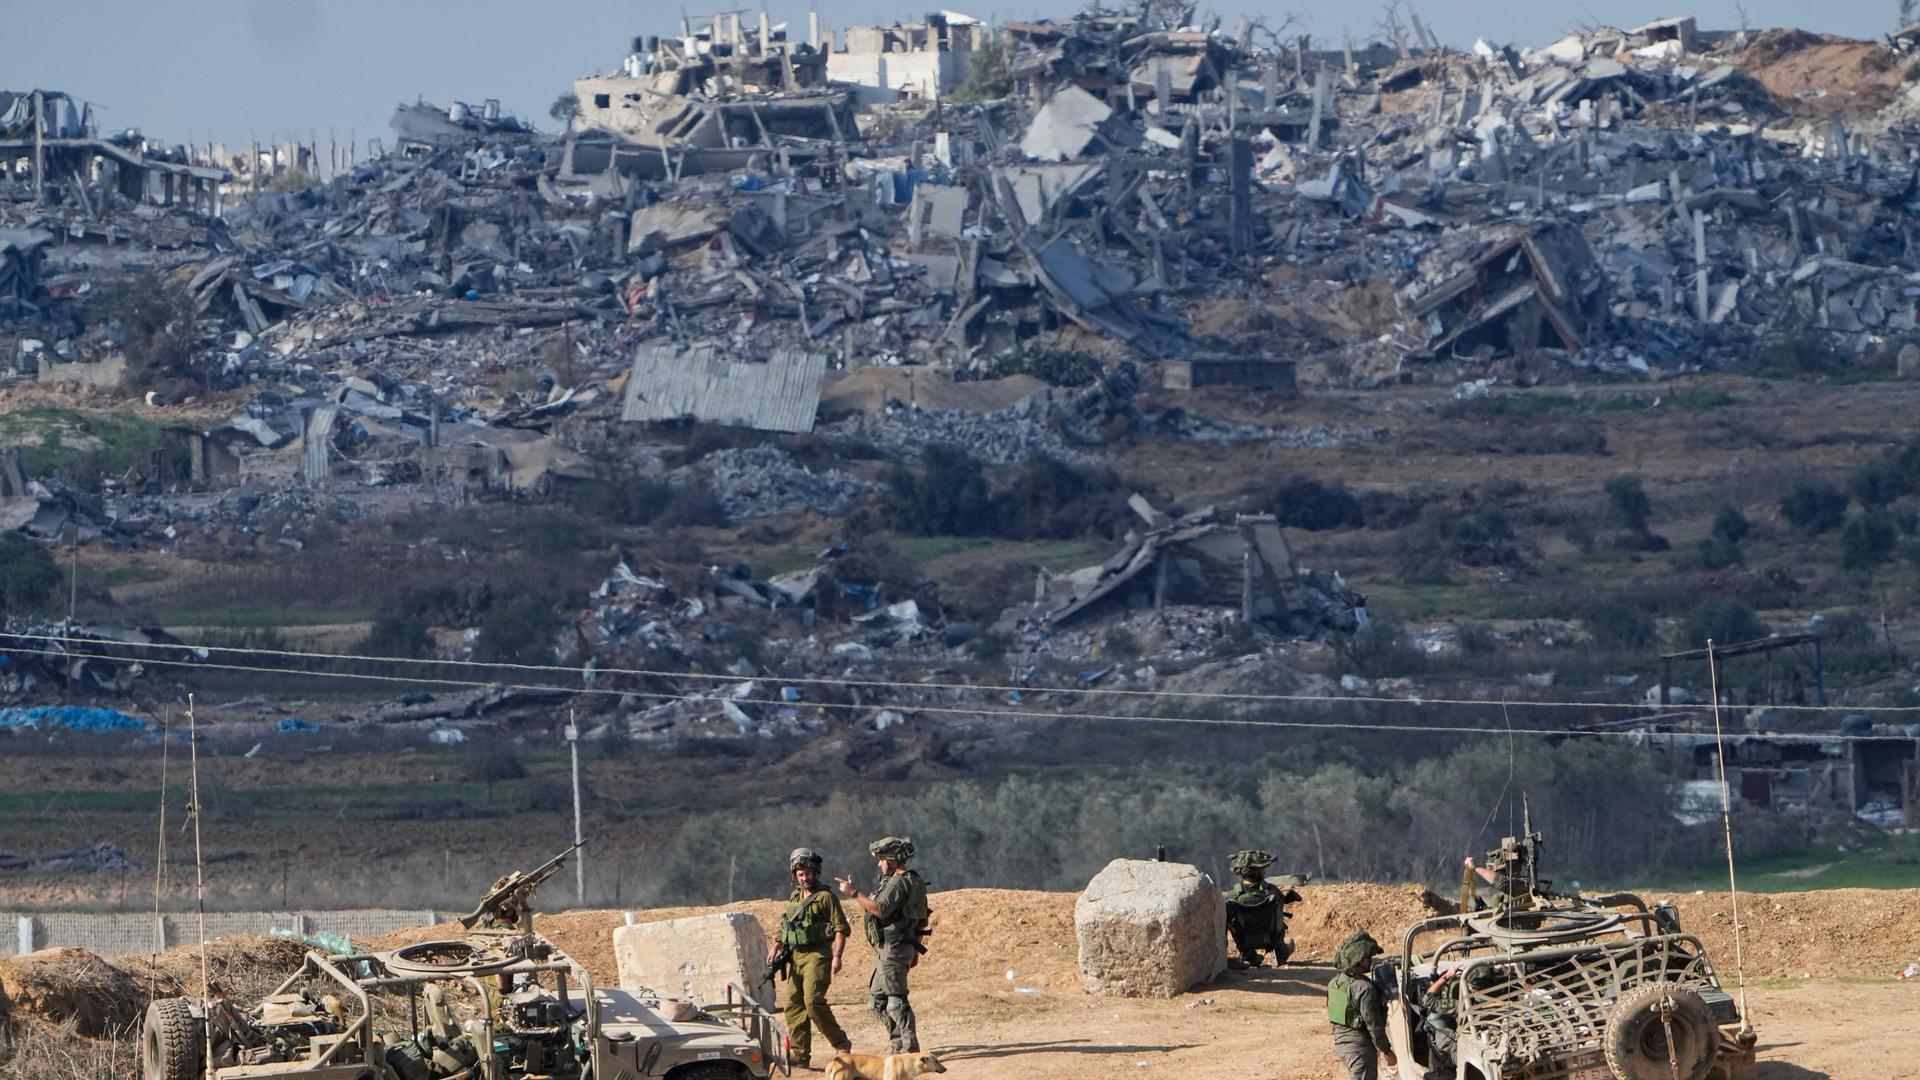 Zwei Jeeps mit Maschinengewehren und mehrere israelische Soldaten stehen auf einem Hügel. Im Hintergrund sind zerstörte Häuser zu sehen.